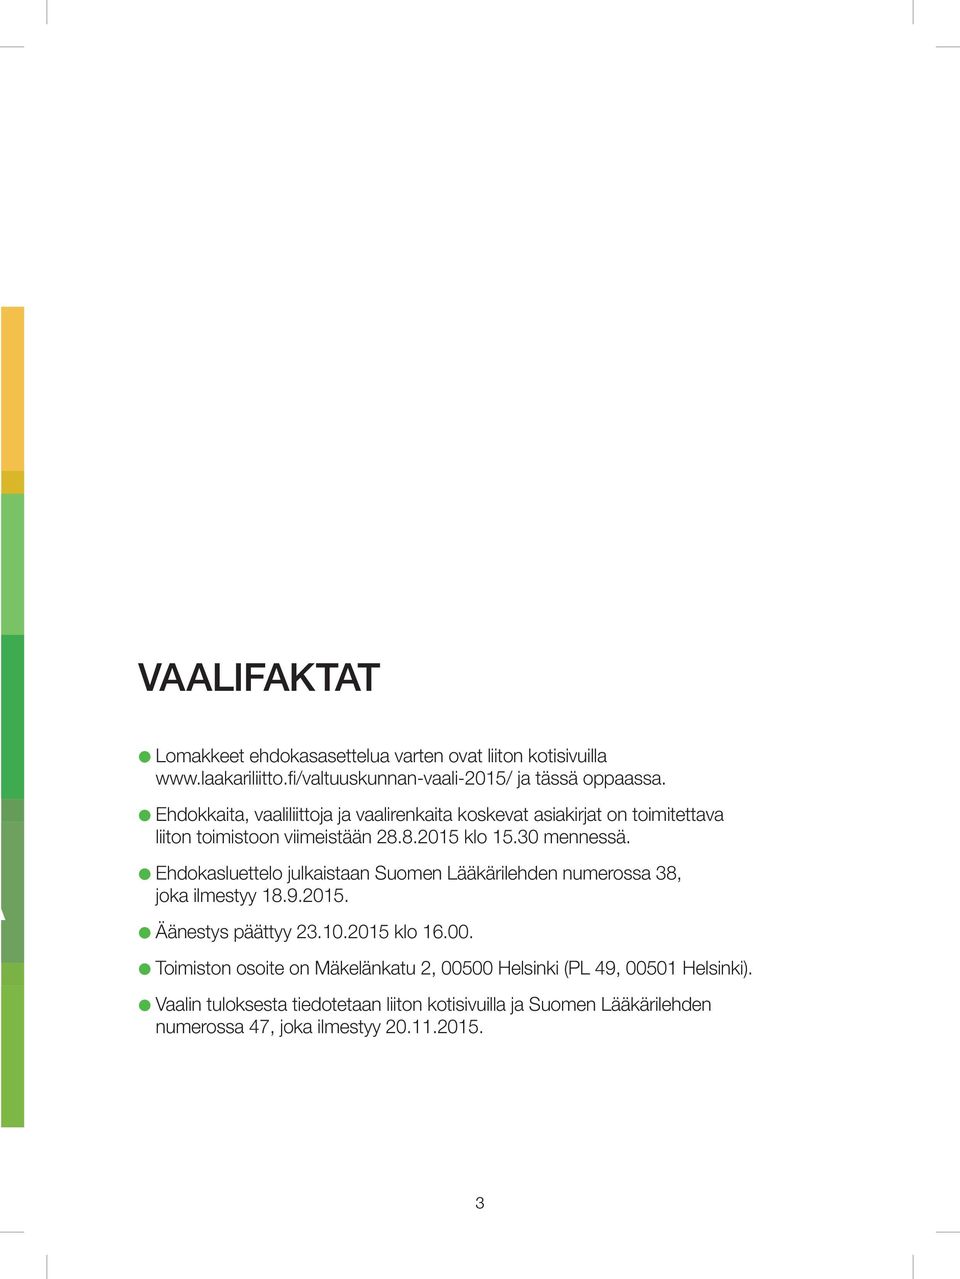 Ehdokasluettelo julkaistaan Suomen Lääkärilehden numerossa 38, joka ilmestyy 18.9.2015. Äänestys päättyy 23.10.2015 klo 16.00.